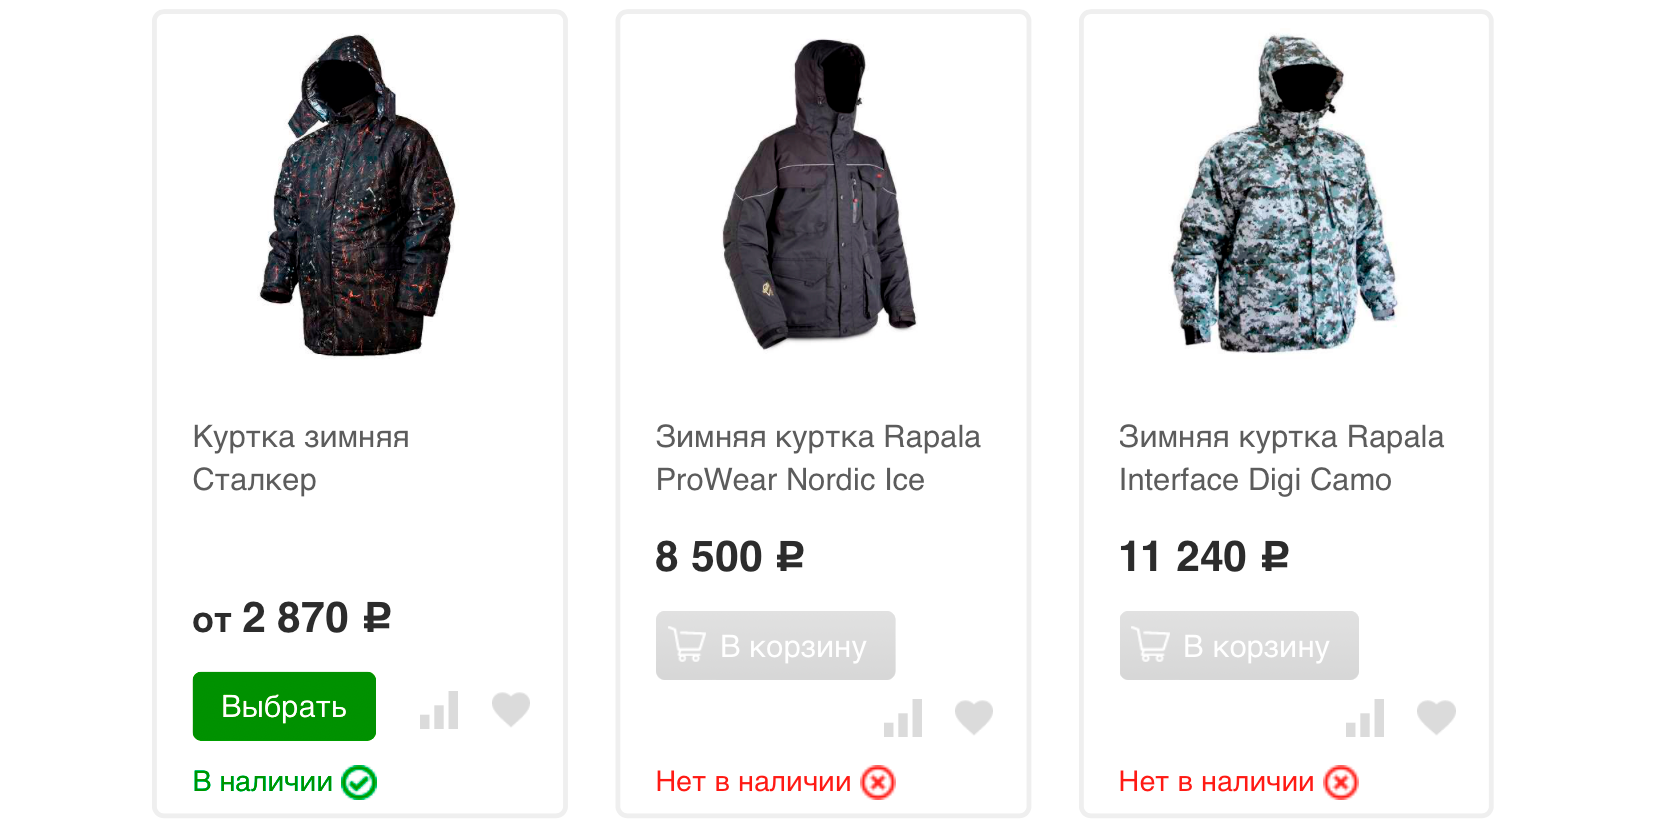 Цены на куртки начинаются от 2870 ₽. Источник: rybolovnyi.ru